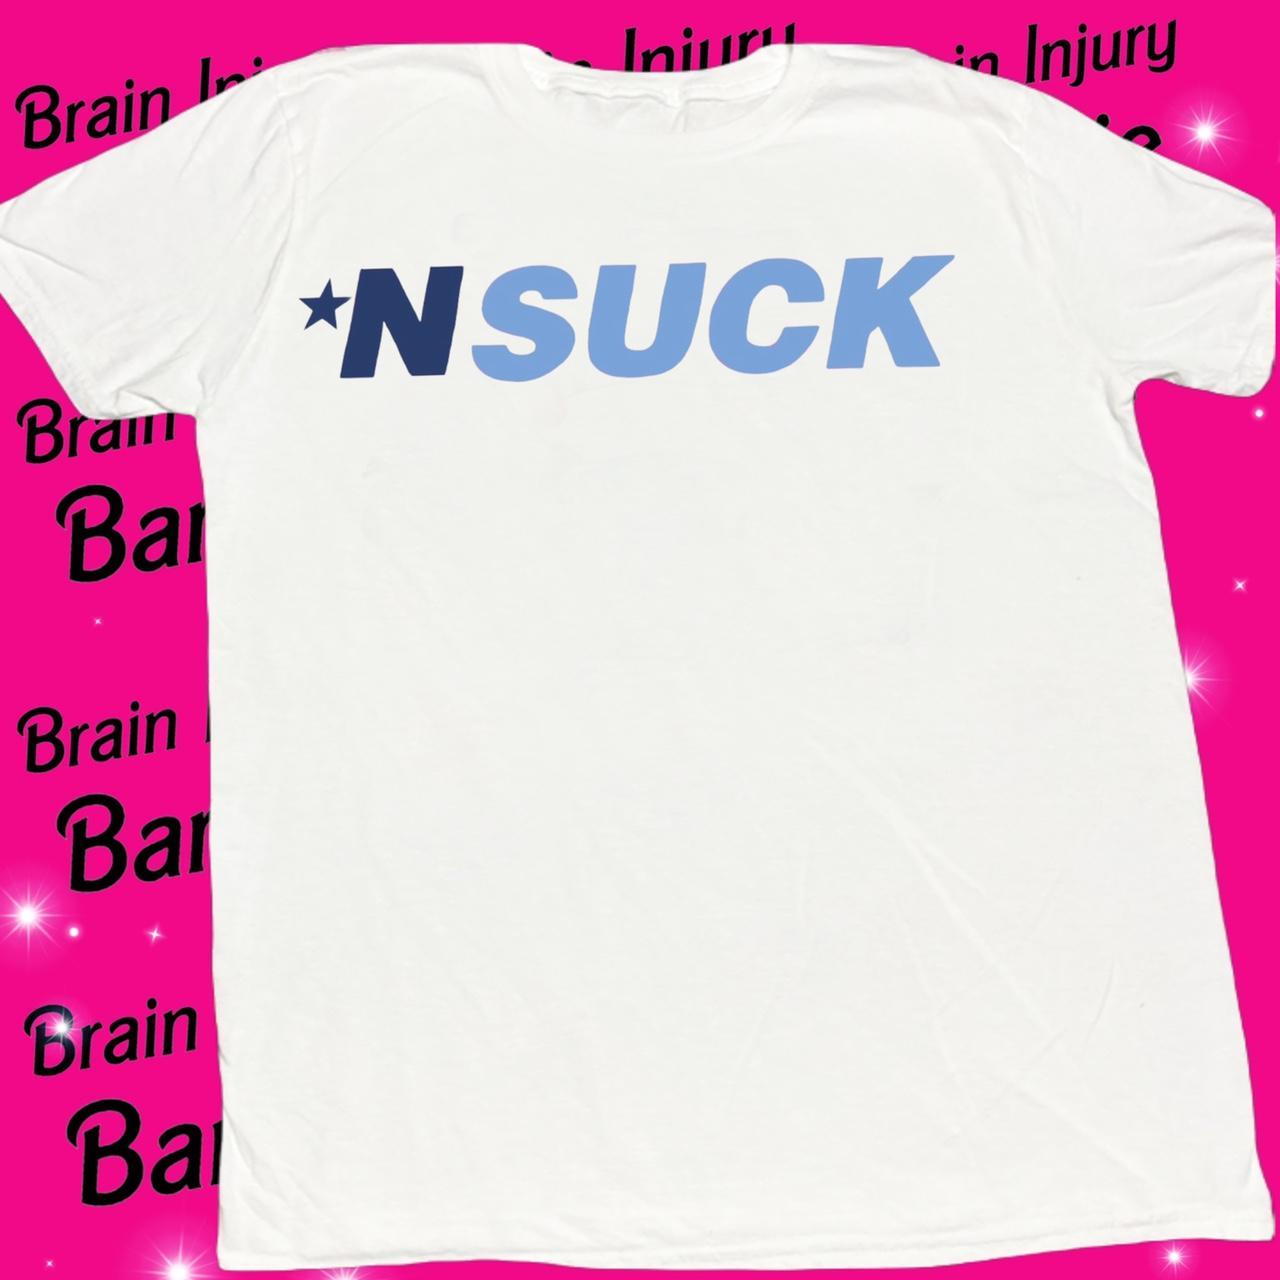 *NSYNC Multi Color Logo T-Shirt 2XL / Smoke